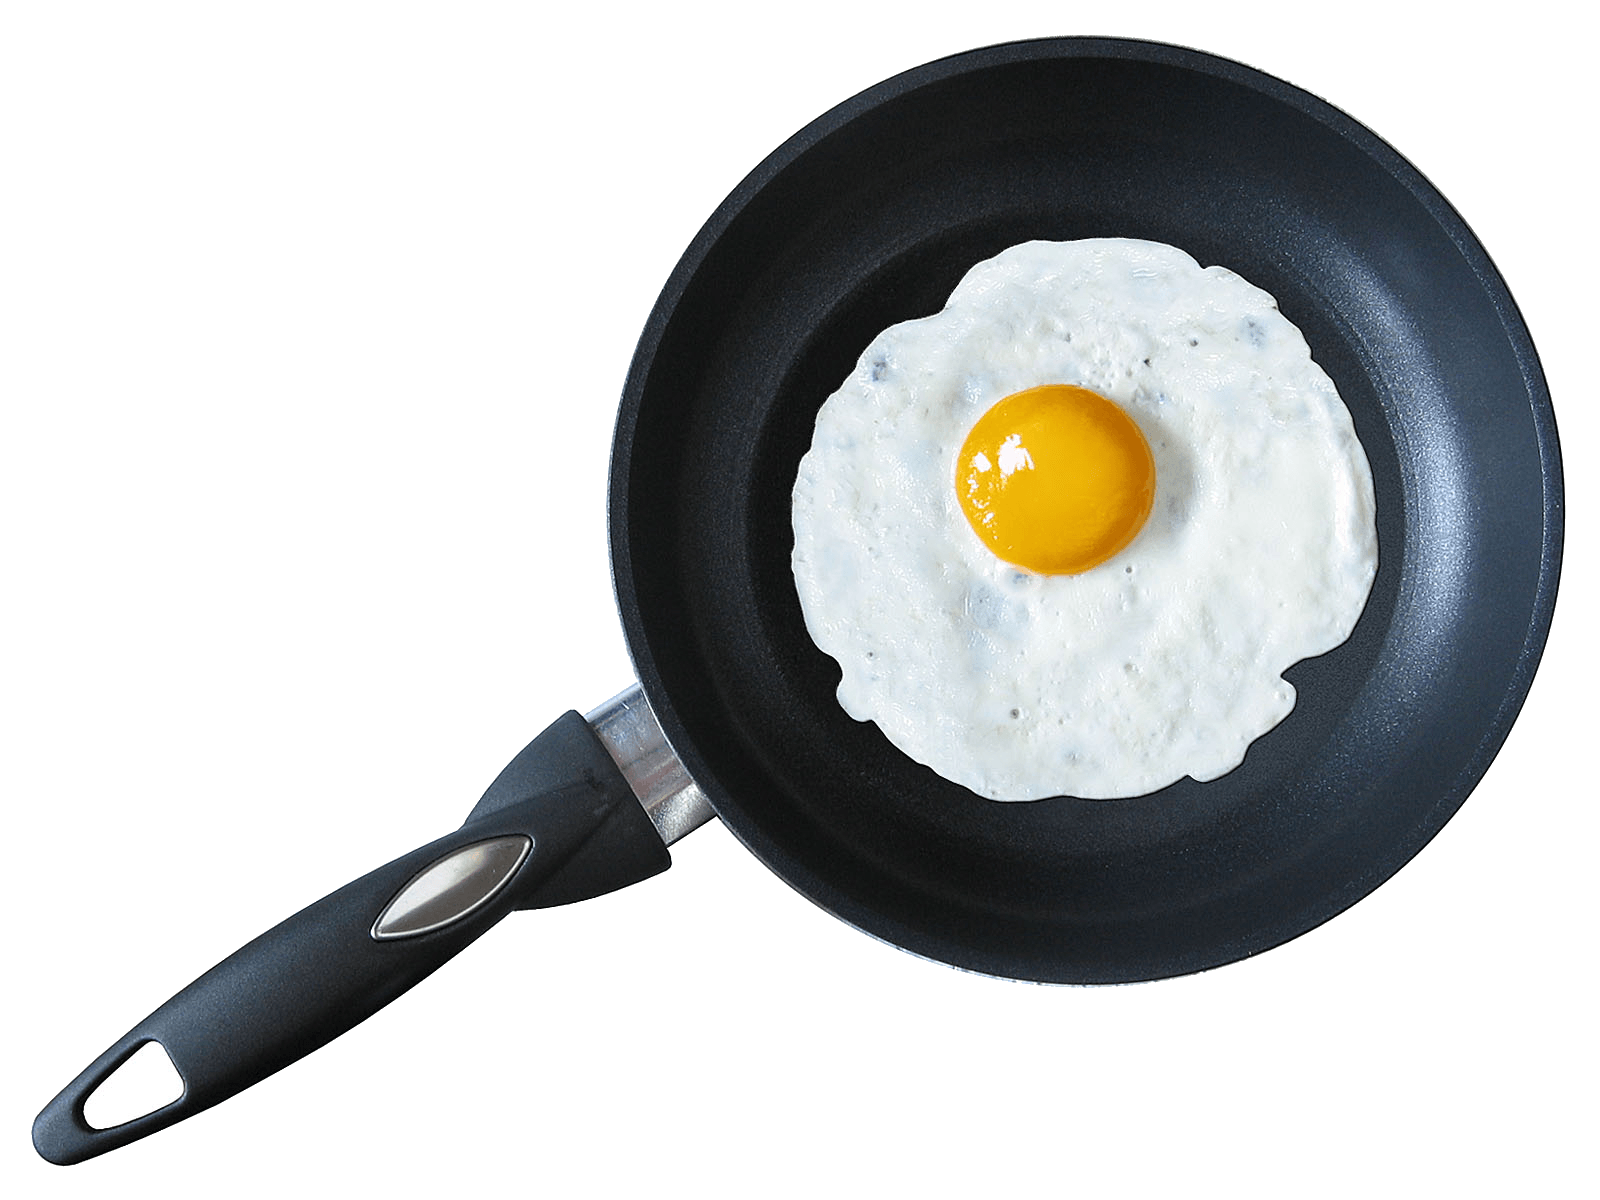 Download Fried Egg Png Image HQ PNG Image